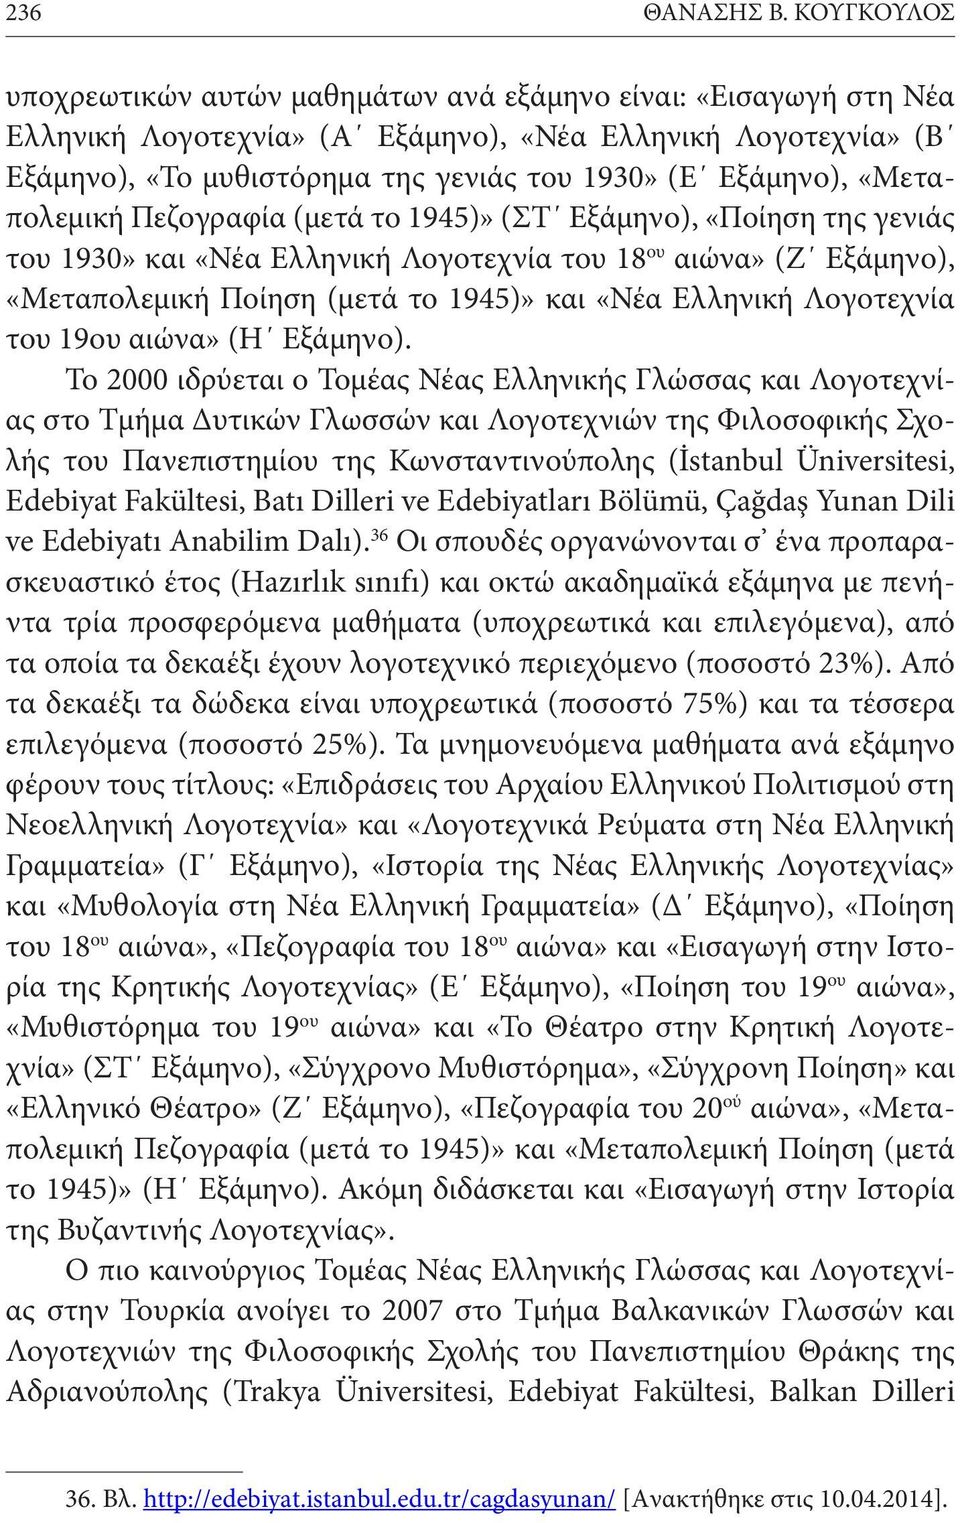 «Μεταπολεμική Πεζογραφία (μετά το 1945)» (ΣΤ Εξάμηνο), «Ποίηση της γενιάς του 1930» και «Νέα Ελληνική Λογοτεχνία του 18 ου αιώνα» (Ζ Εξάμηνο), «Μεταπολεμική Ποίηση (μετά το 1945)» και «Νέα Ελληνική